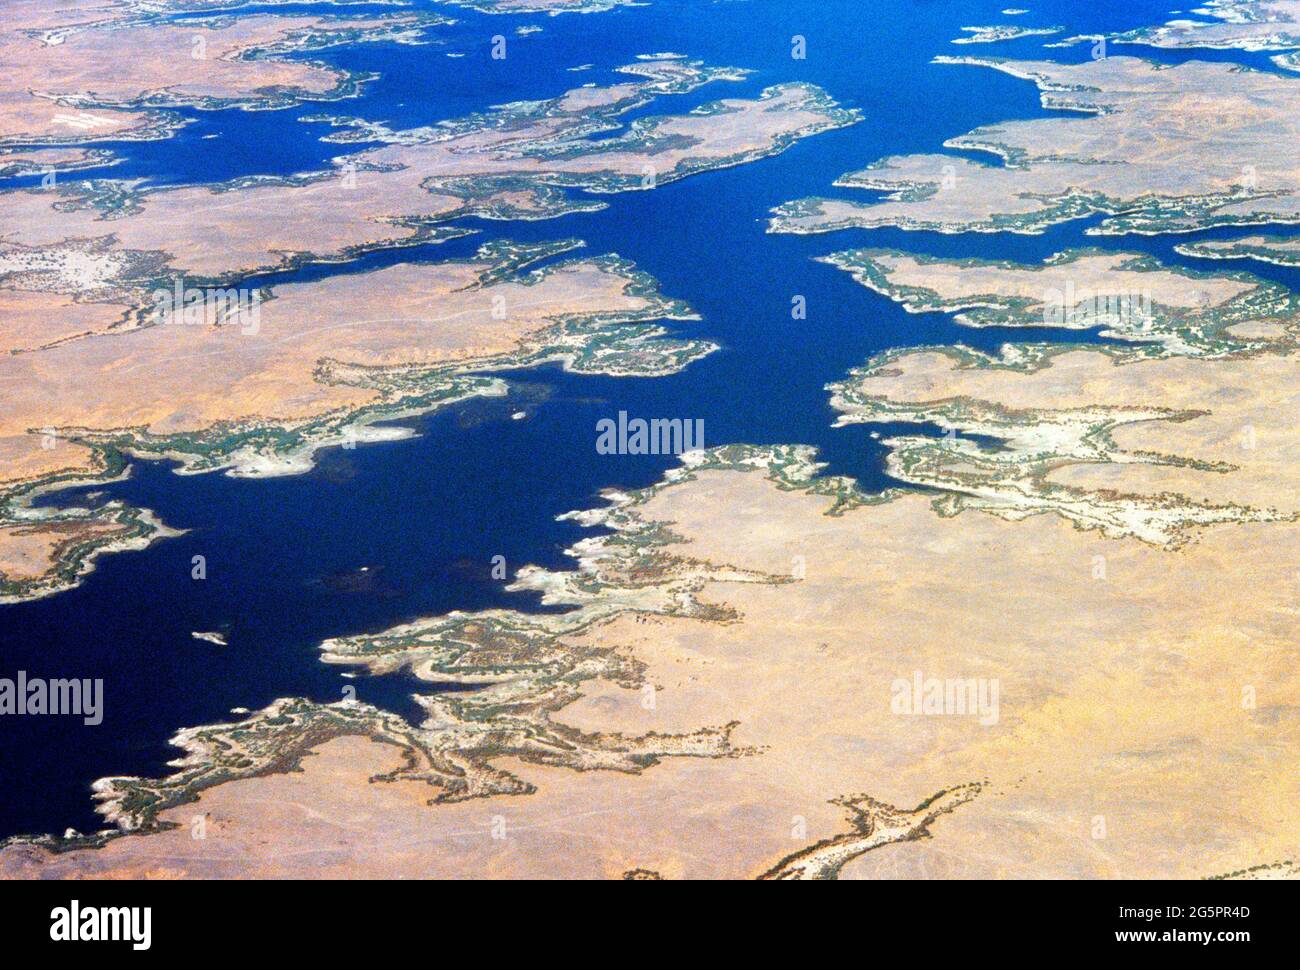 Luftaufnahme des Nasser-Sees Ägypten einer der größten vom Menschen gemachten Seen der Welt Stockfoto